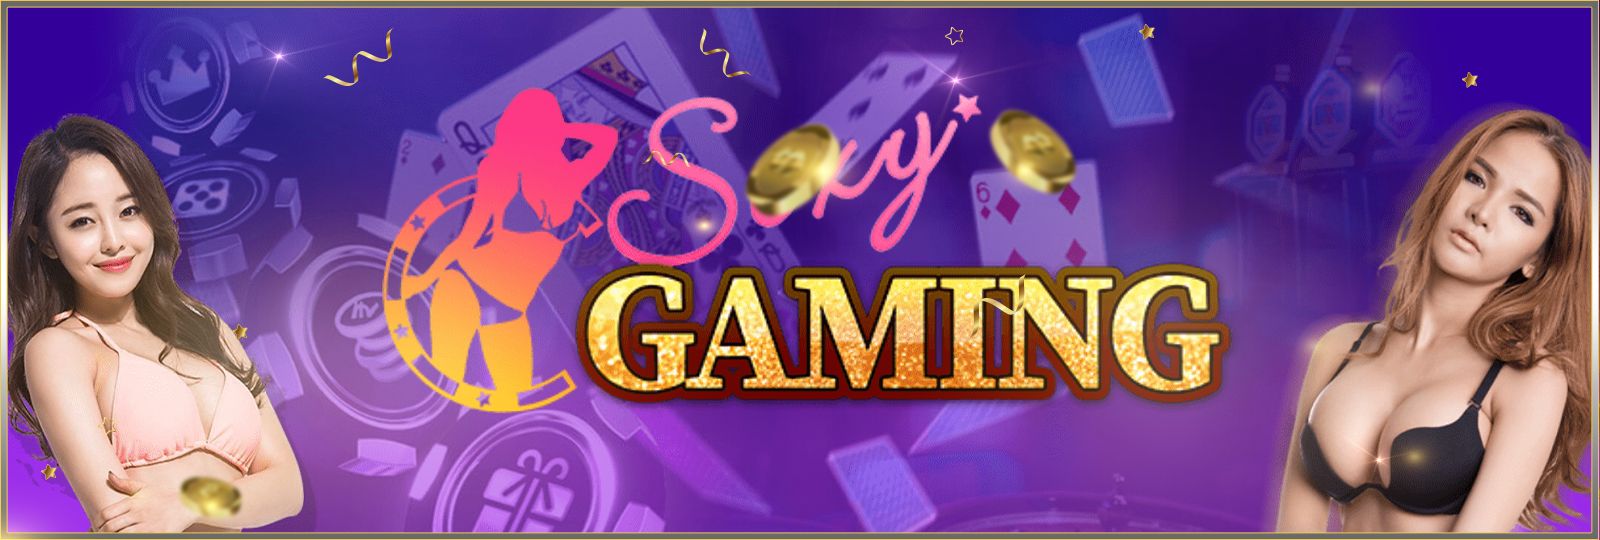 บาคาร่าออนไลน์ sexy casino ค่ายเกมสุดฮิต